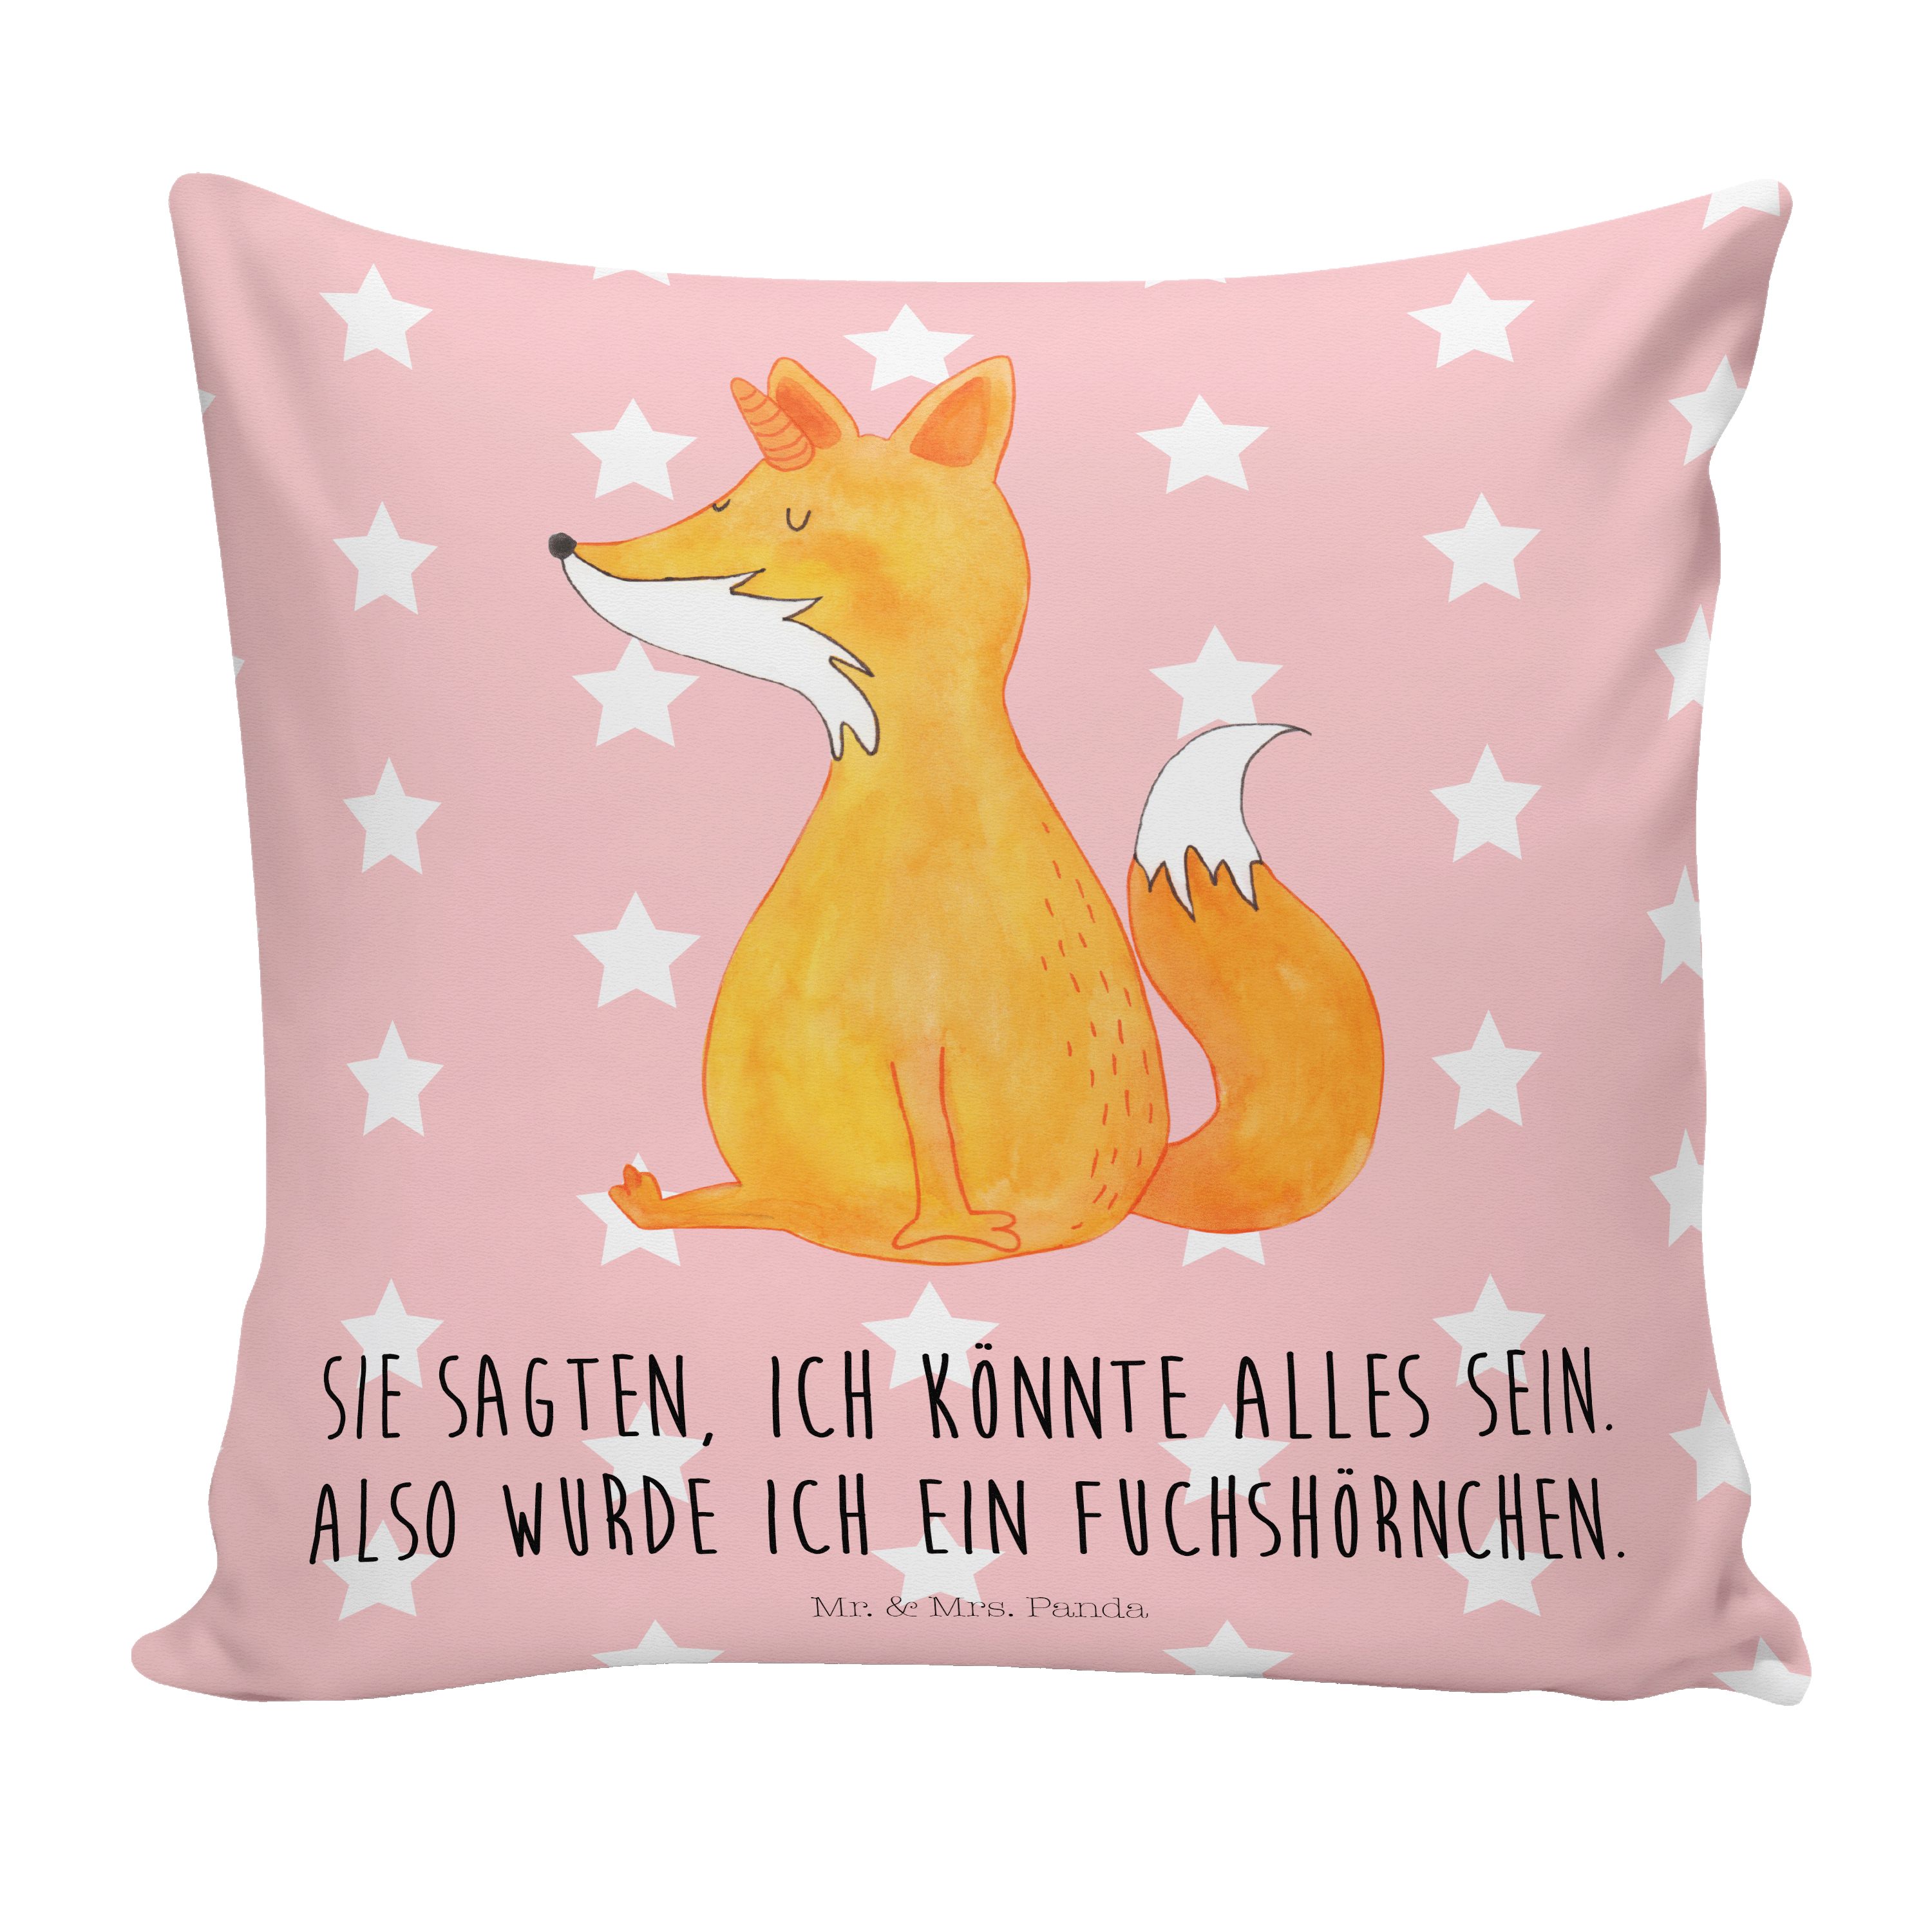 Wunsch Fuchshörnchen Mr. Mrs. Einhorn, Rot Dekokissen - Geschenk, Foxycorn, Dek Panda & Pastell -